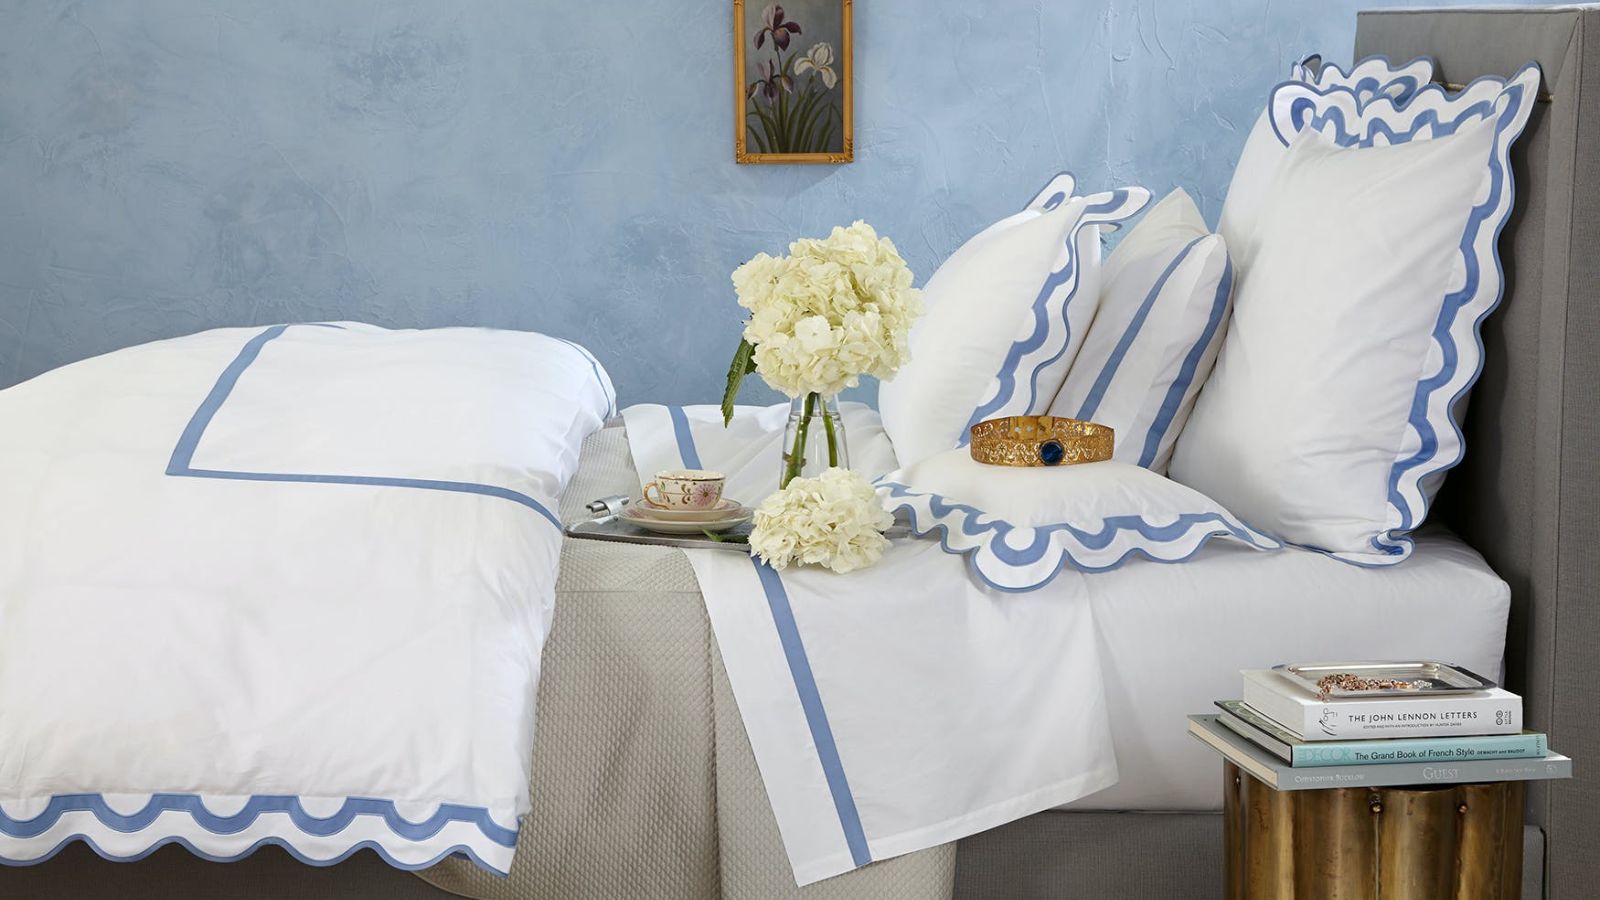 Teddy Fleece Bed Foam Back Rest / White, Best Stylish Bedding